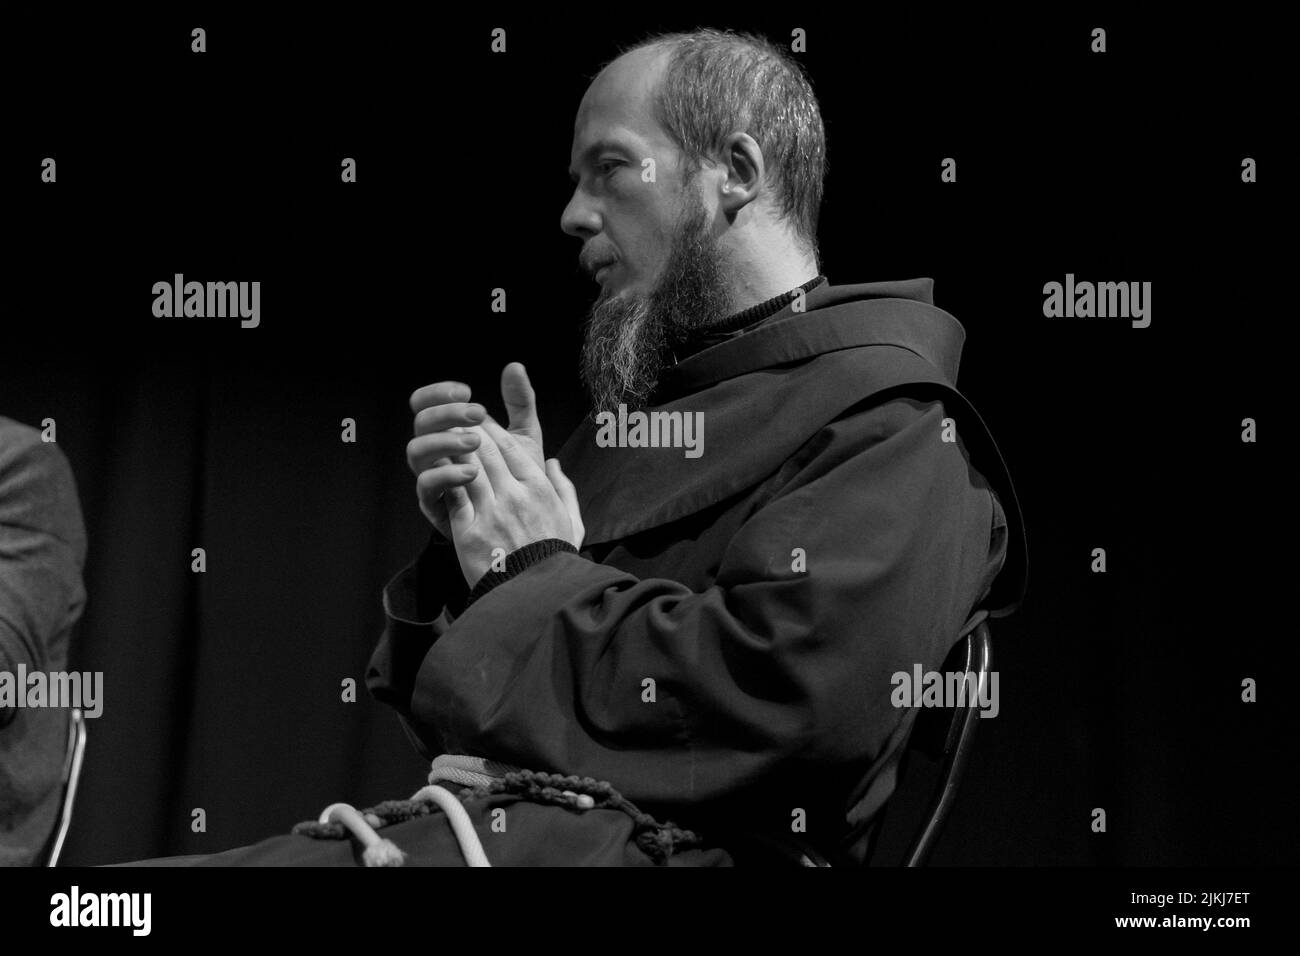 Une photo en gros plan en noir et blanc d'une personne religieuse lors d'une discussion ensemble contre la haine Banque D'Images